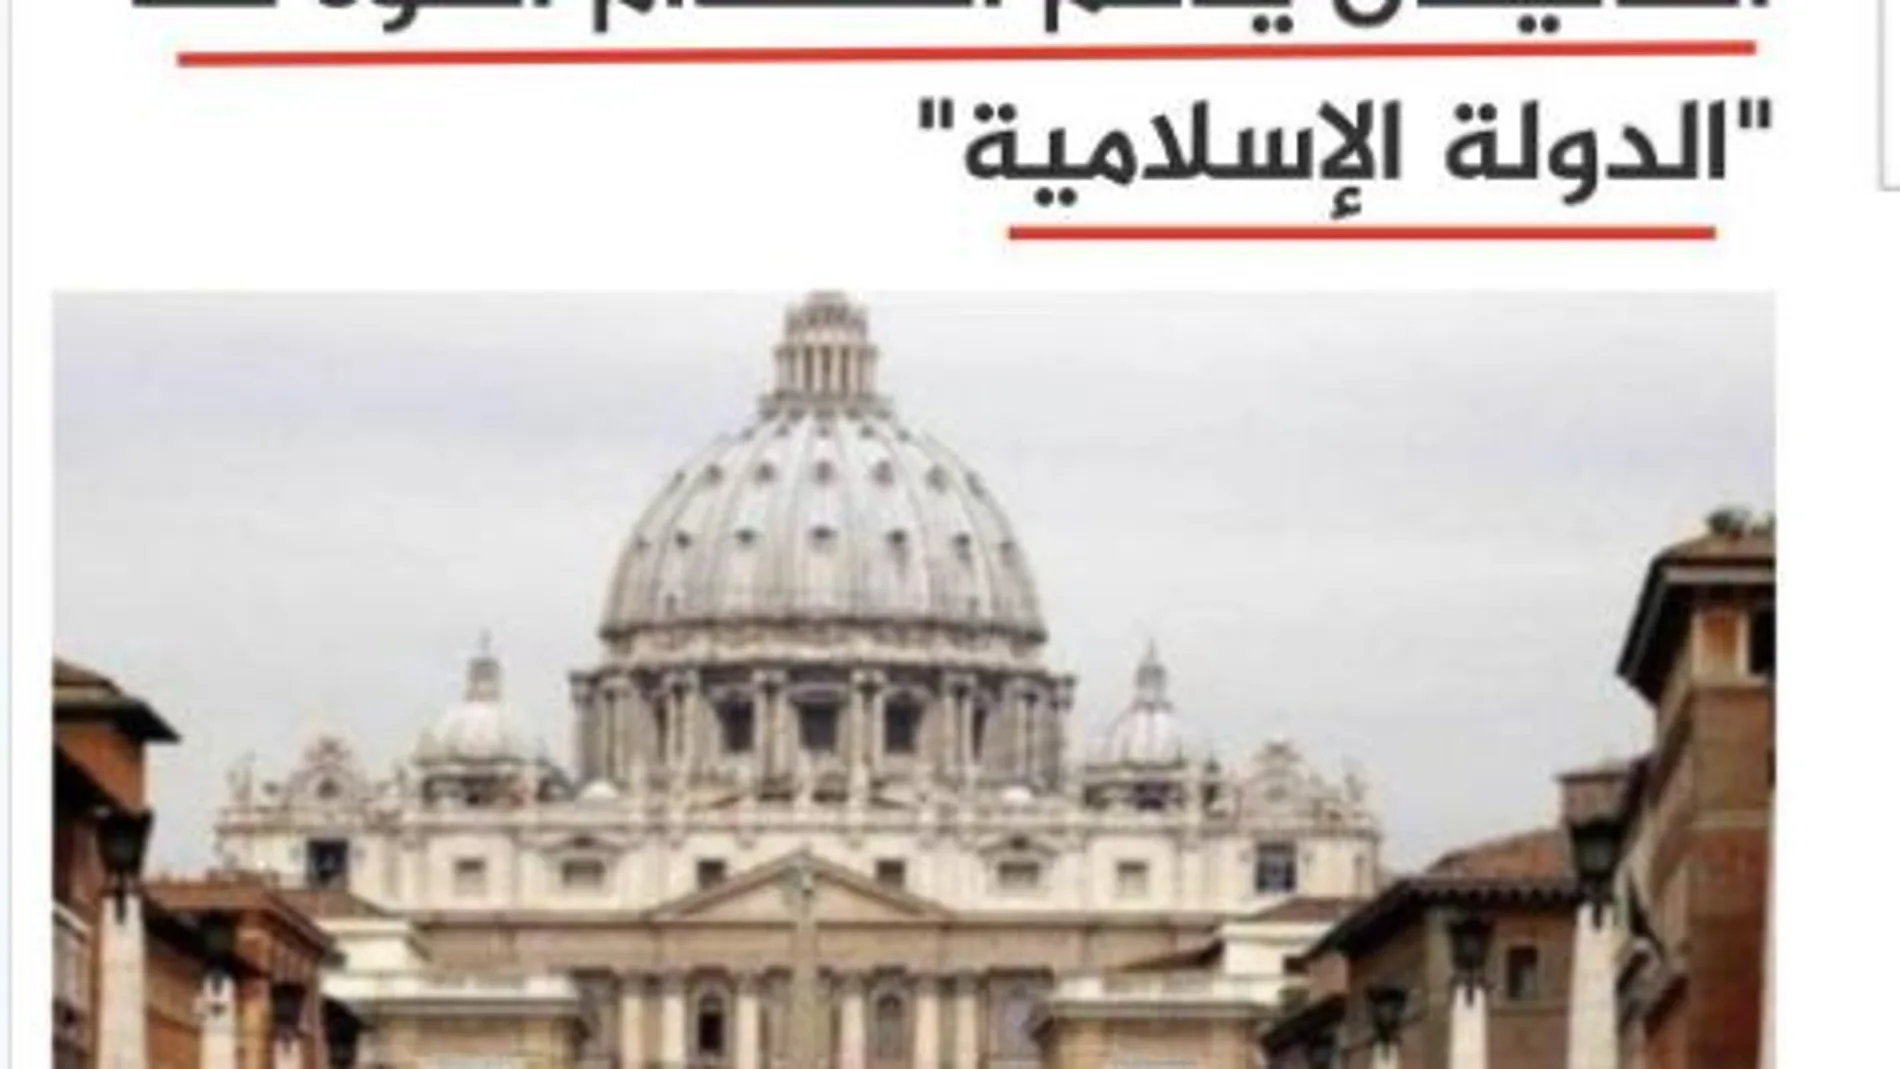 Daesh publicó recientemente un mensaje en el que aseguraba que “el Vaticano respalda el uso de la fuerza” contra este grupo criminal.